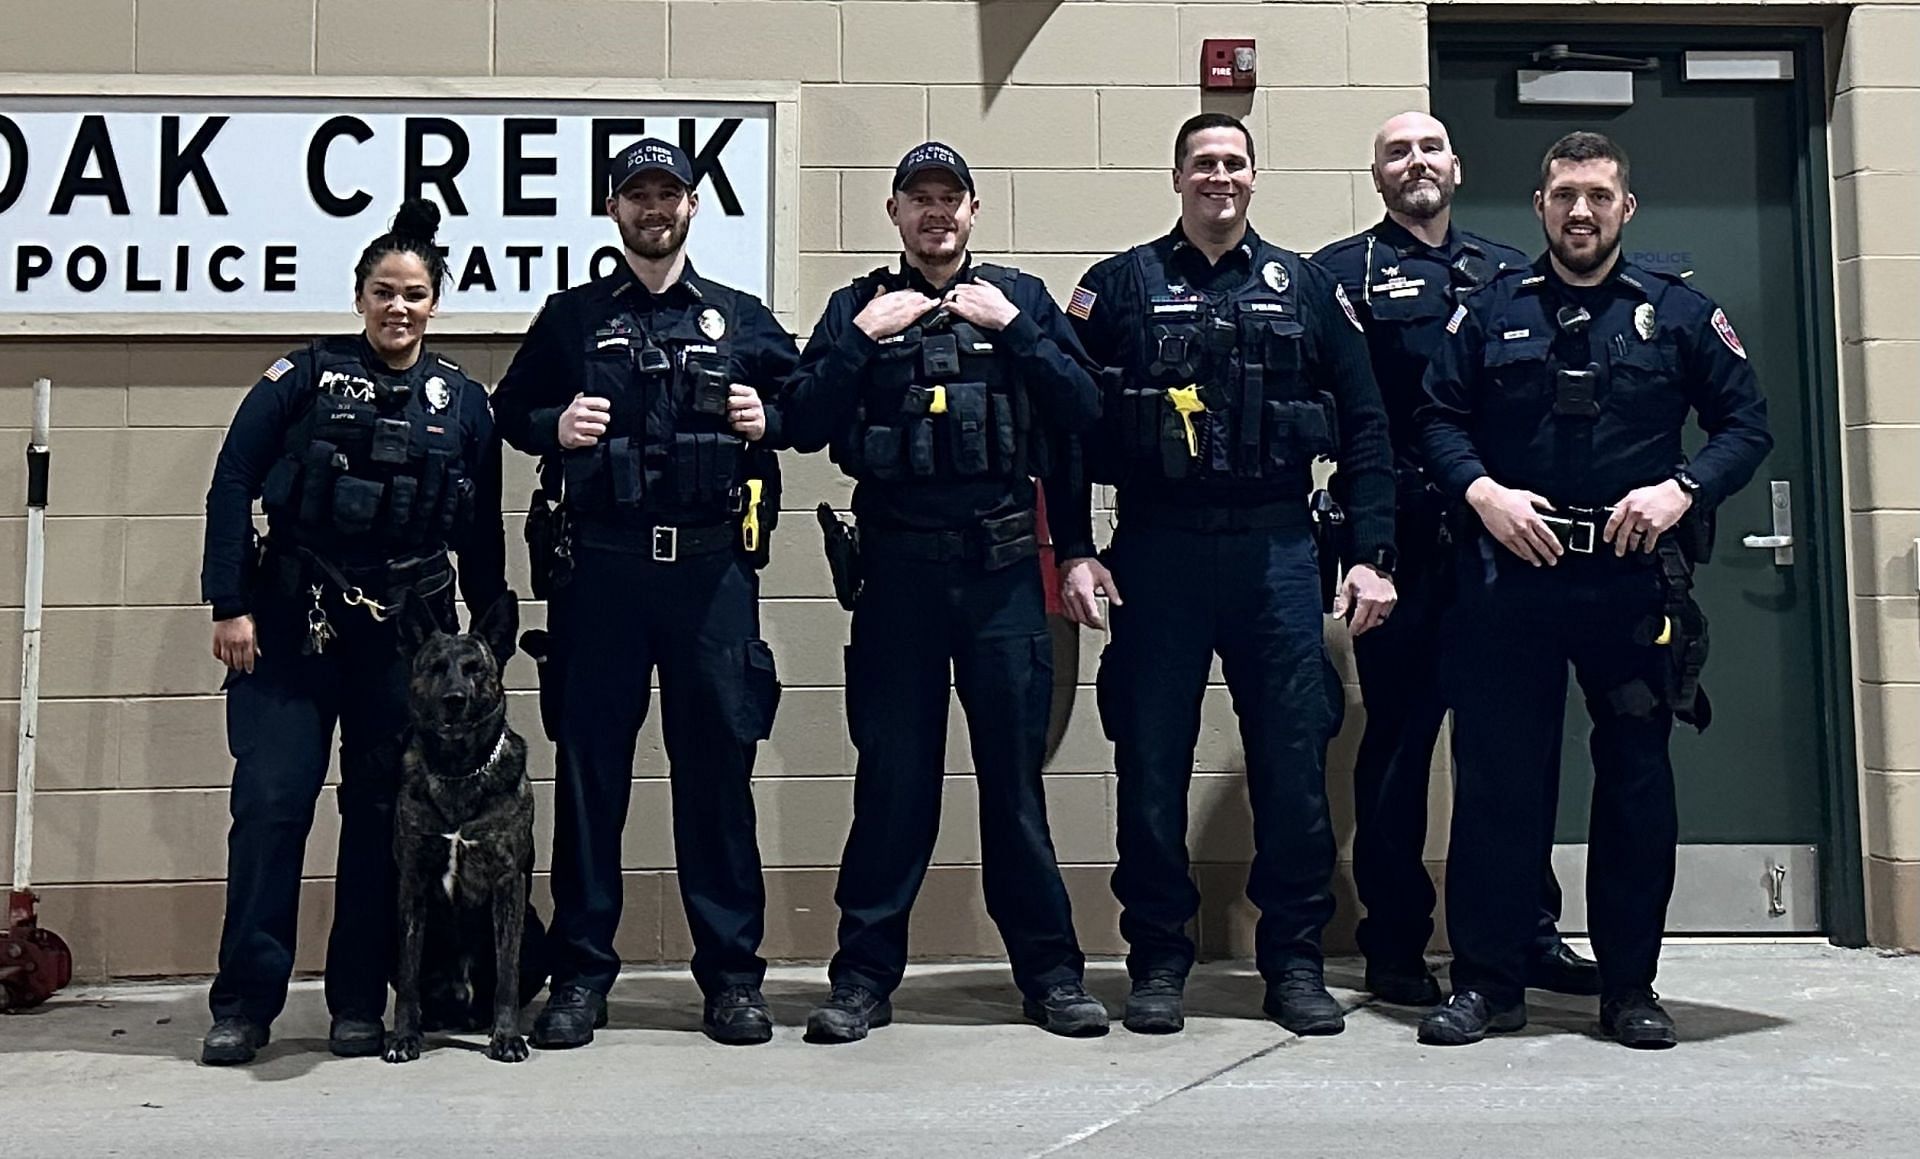 Oak Creek Police (Image via Twitter/@OakCreekPolice)